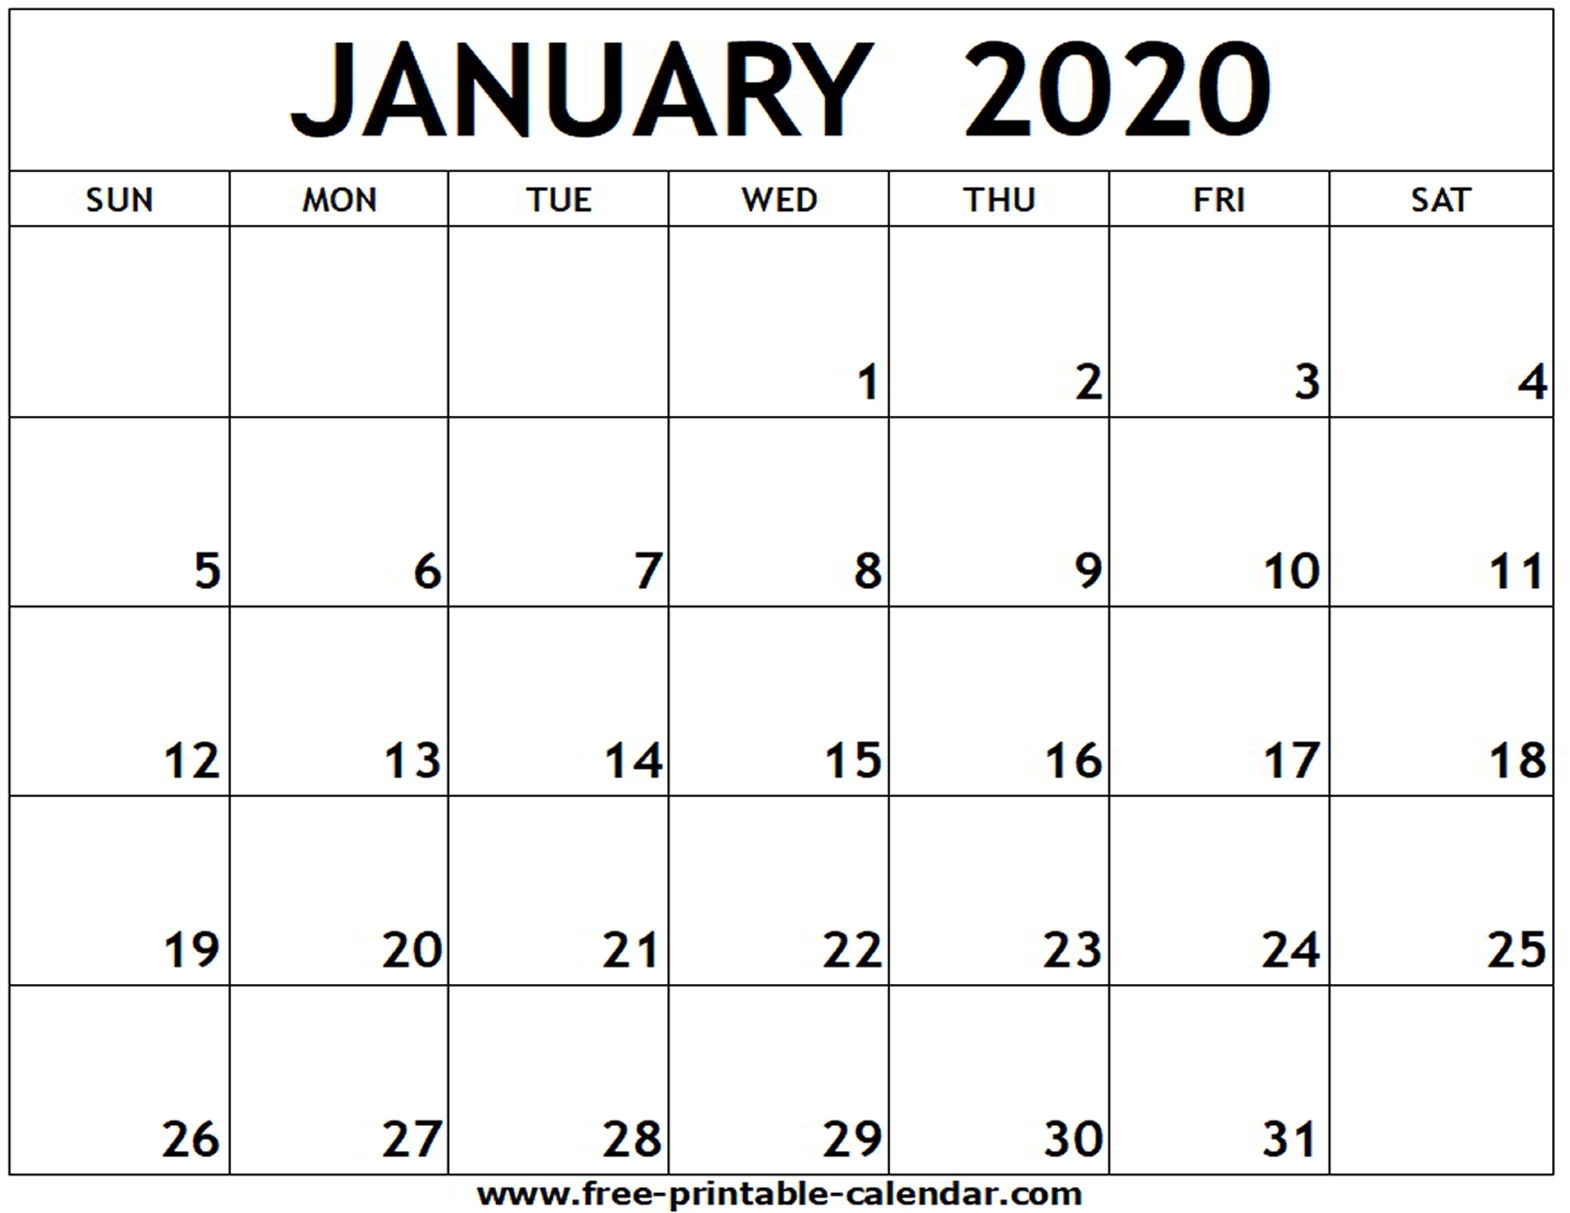 January 2020 Printable Calendar - Free-Printable-Calendar Perky January 2020 Calendar Printable Free